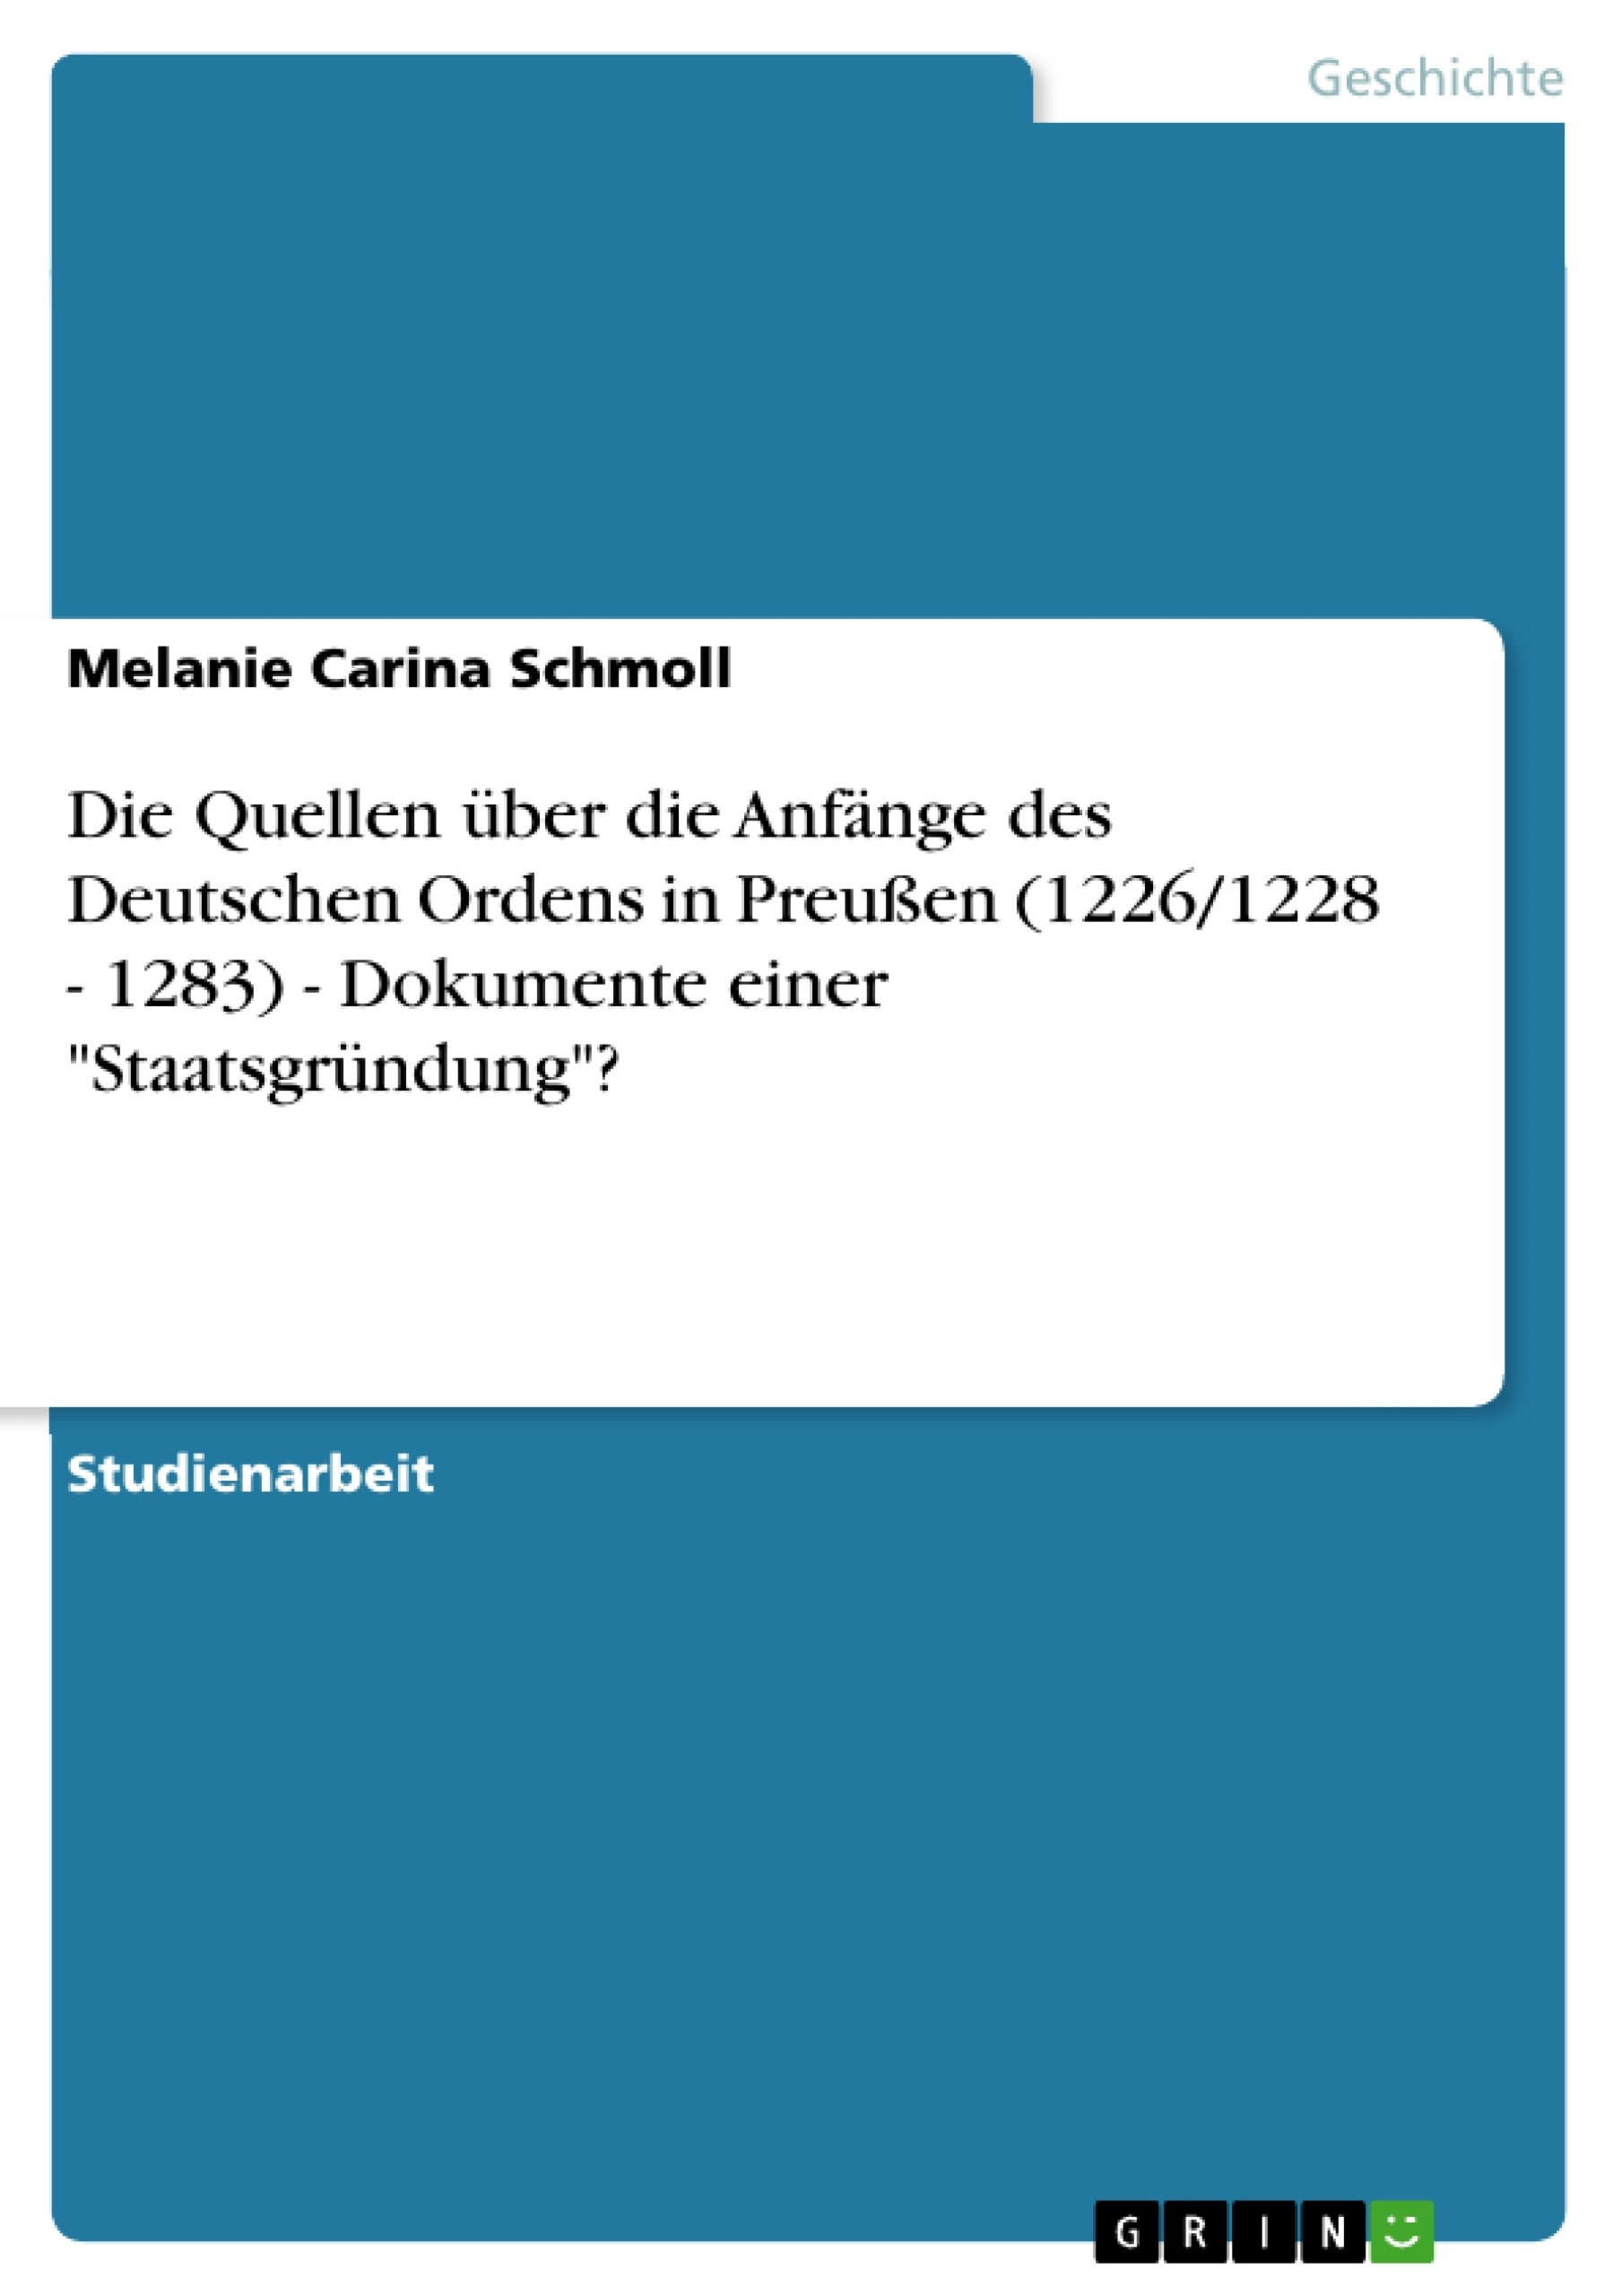 Titre: Die Quellen über die Anfänge des Deutschen Ordens in Preußen (1226/1228 - 1283) - Dokumente einer "Staatsgründung"?